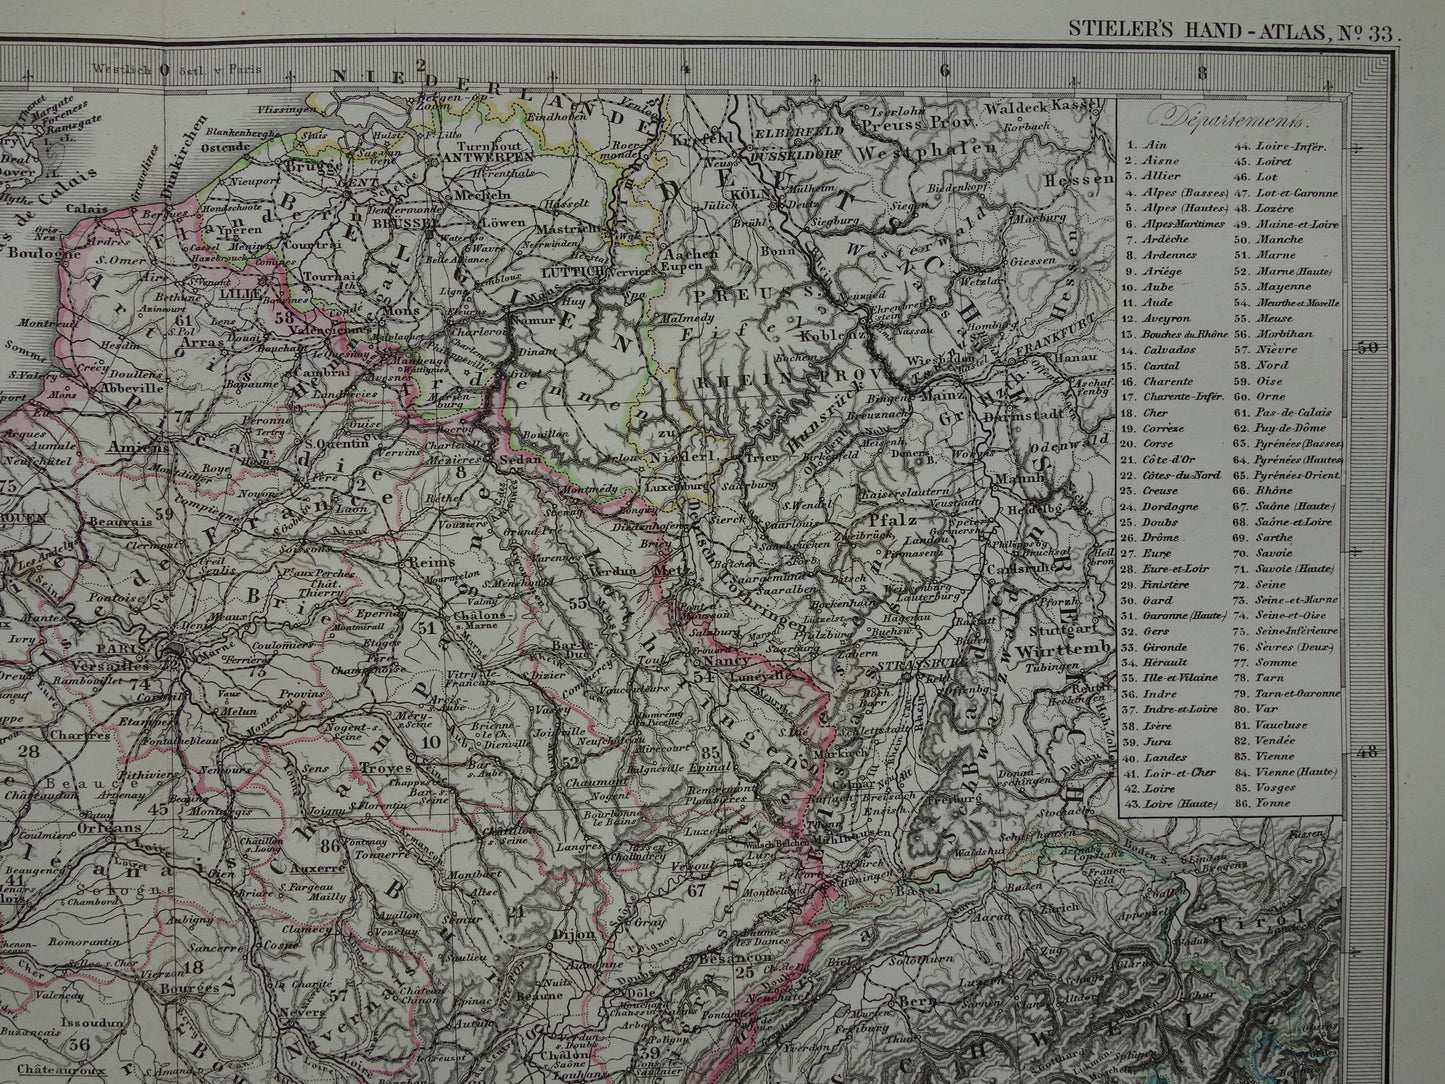 FRANKRIJK oude landkaart van Frankrijk 1877 originele antieke kaart/poster met jaartal